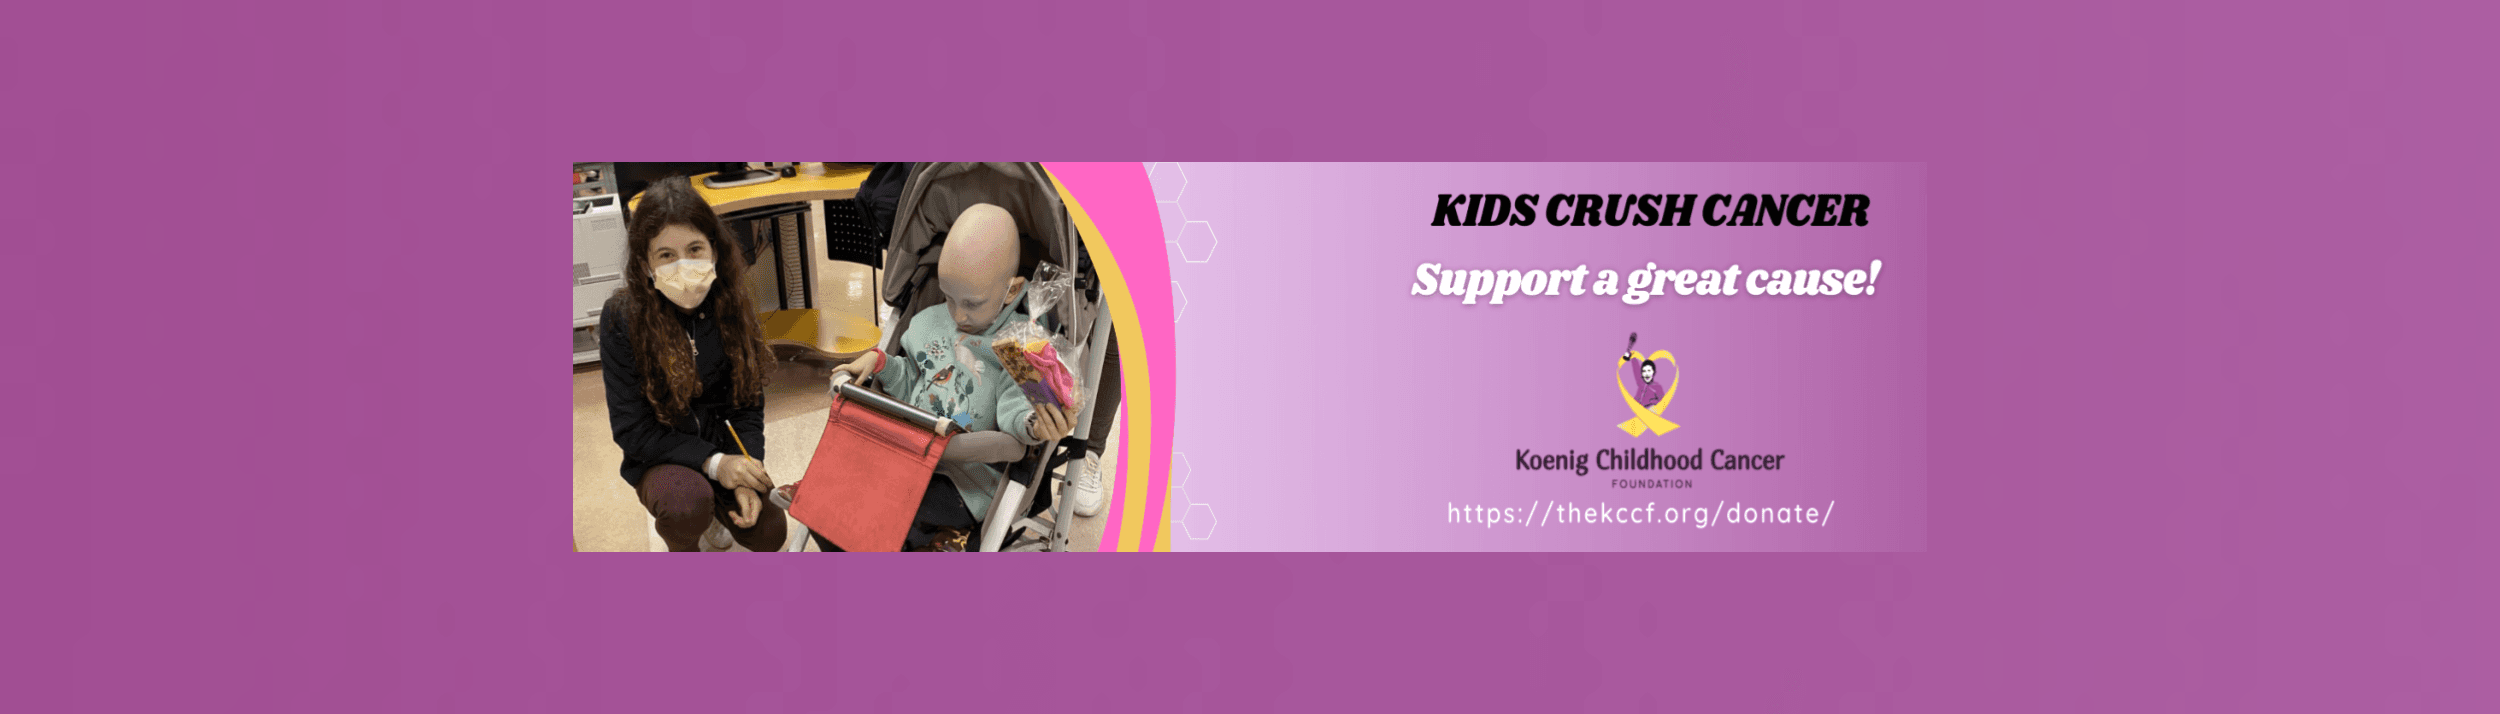 KidsCrushCancer banner